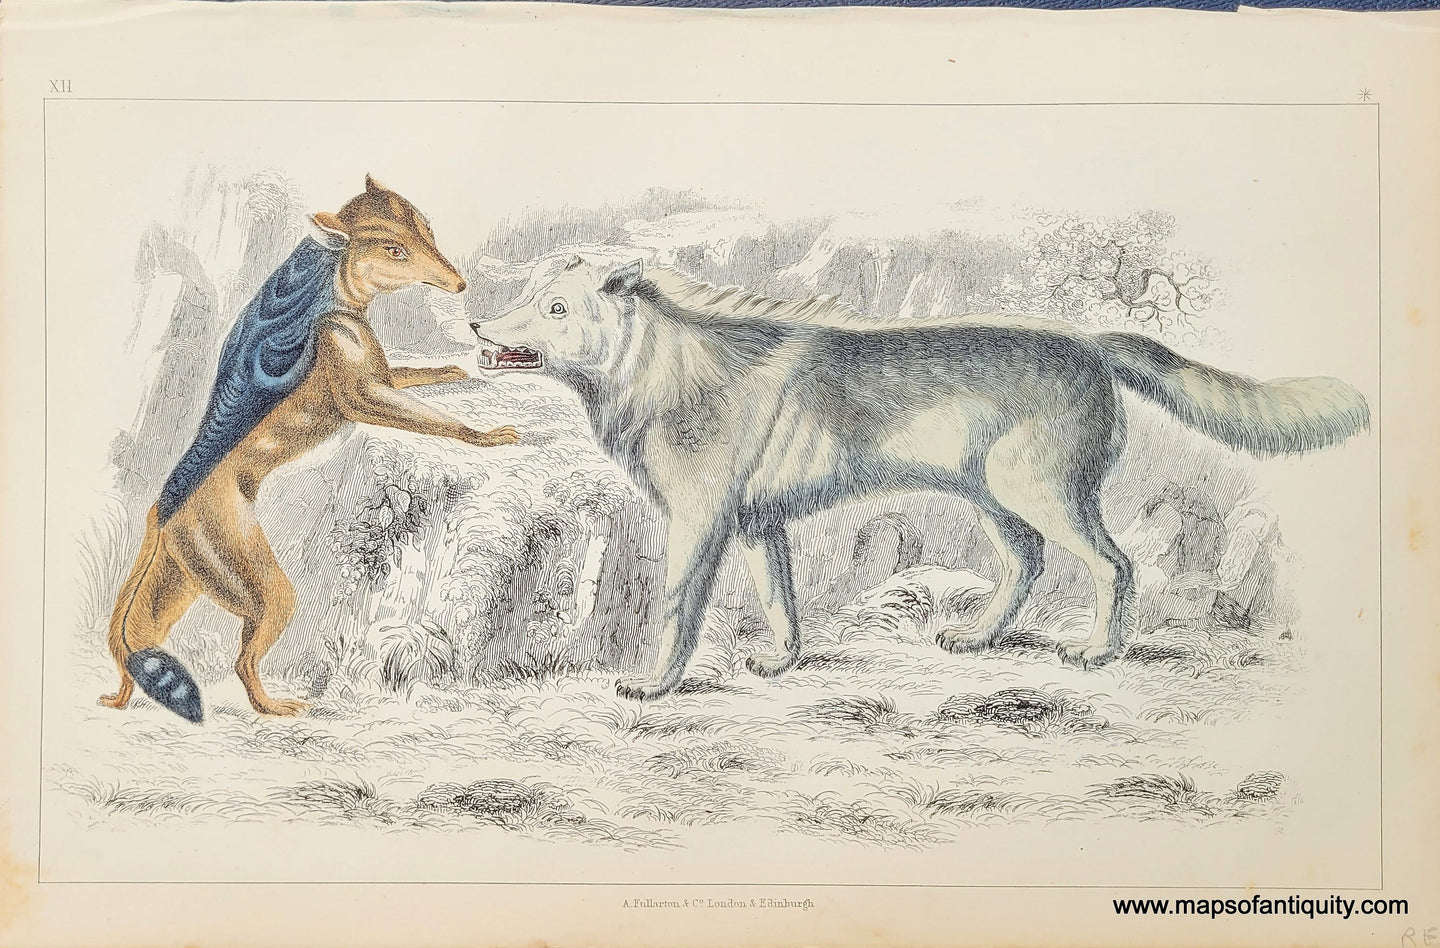 Genuine-Antique-Print-Wolves-1850-Fullarton-Maps-Of-Antiquity